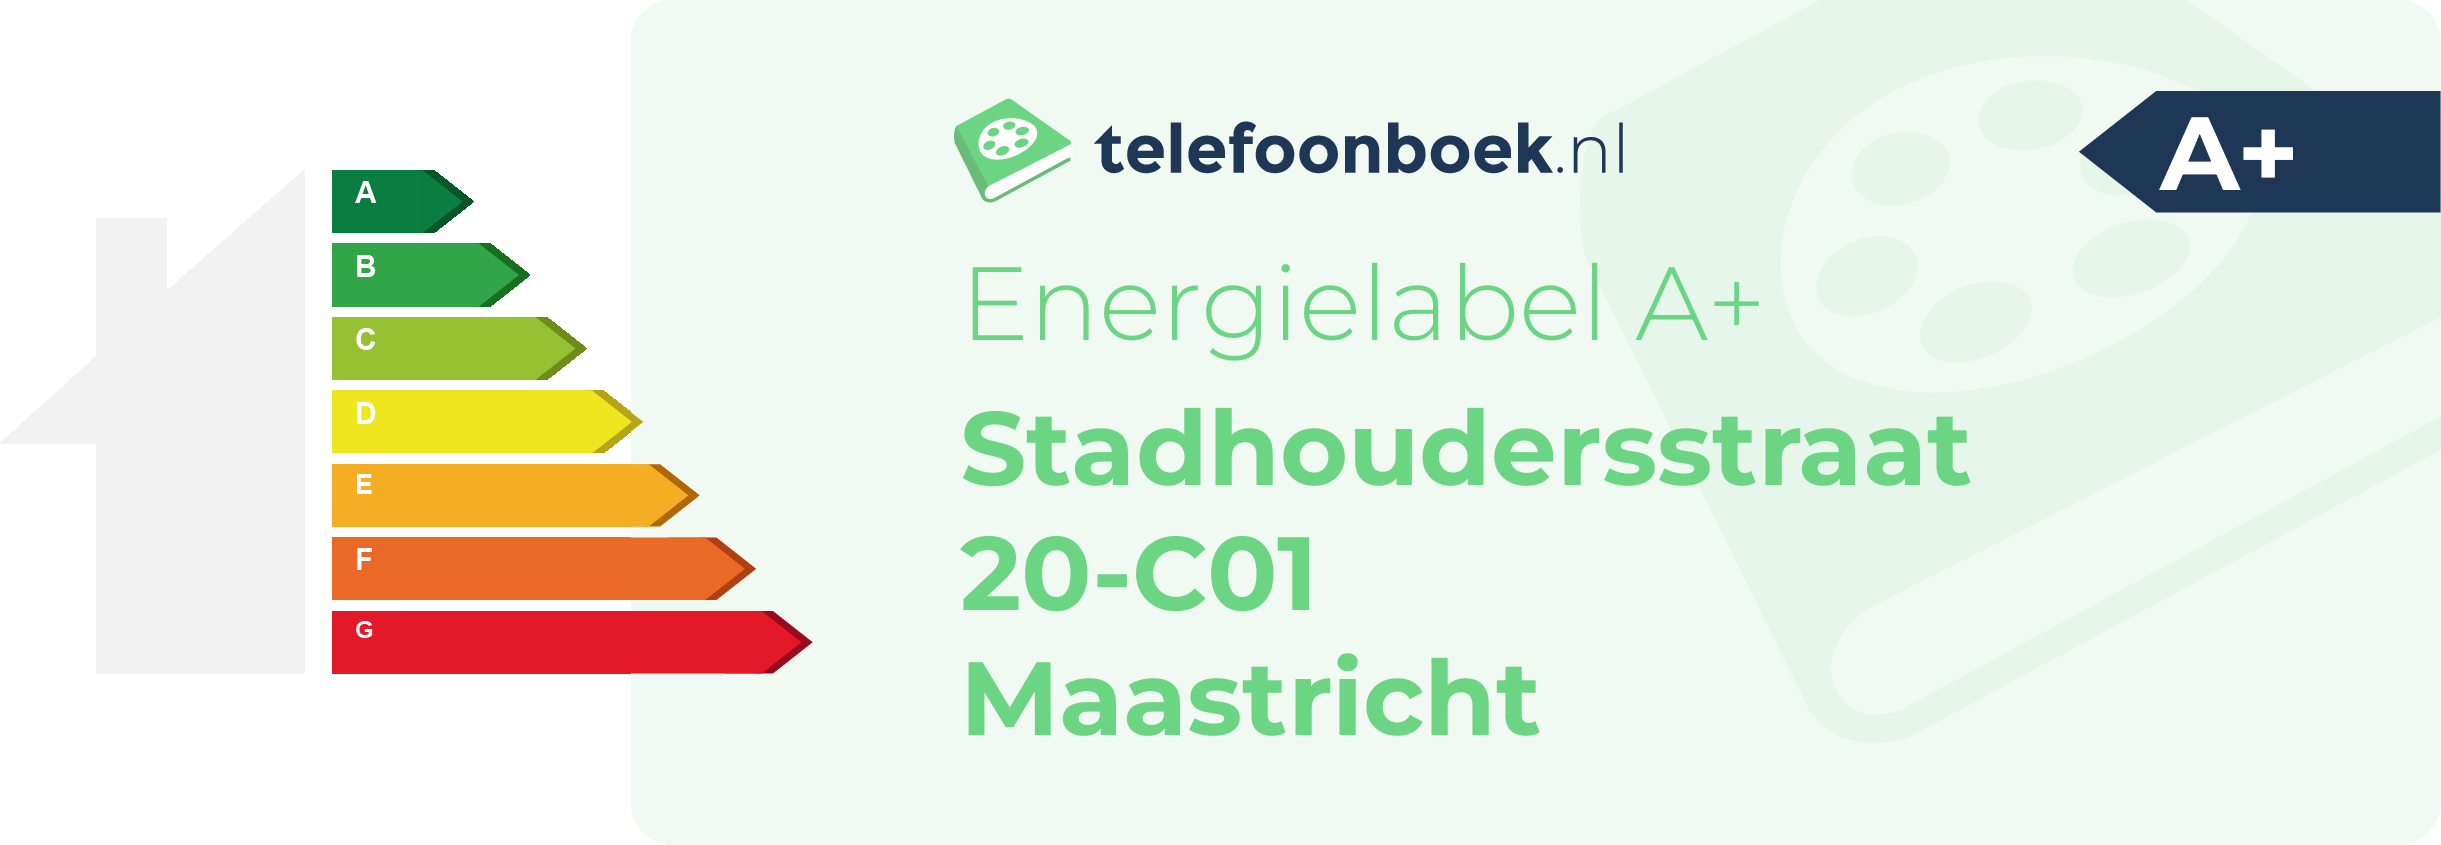 Energielabel Stadhoudersstraat 20-C01 Maastricht